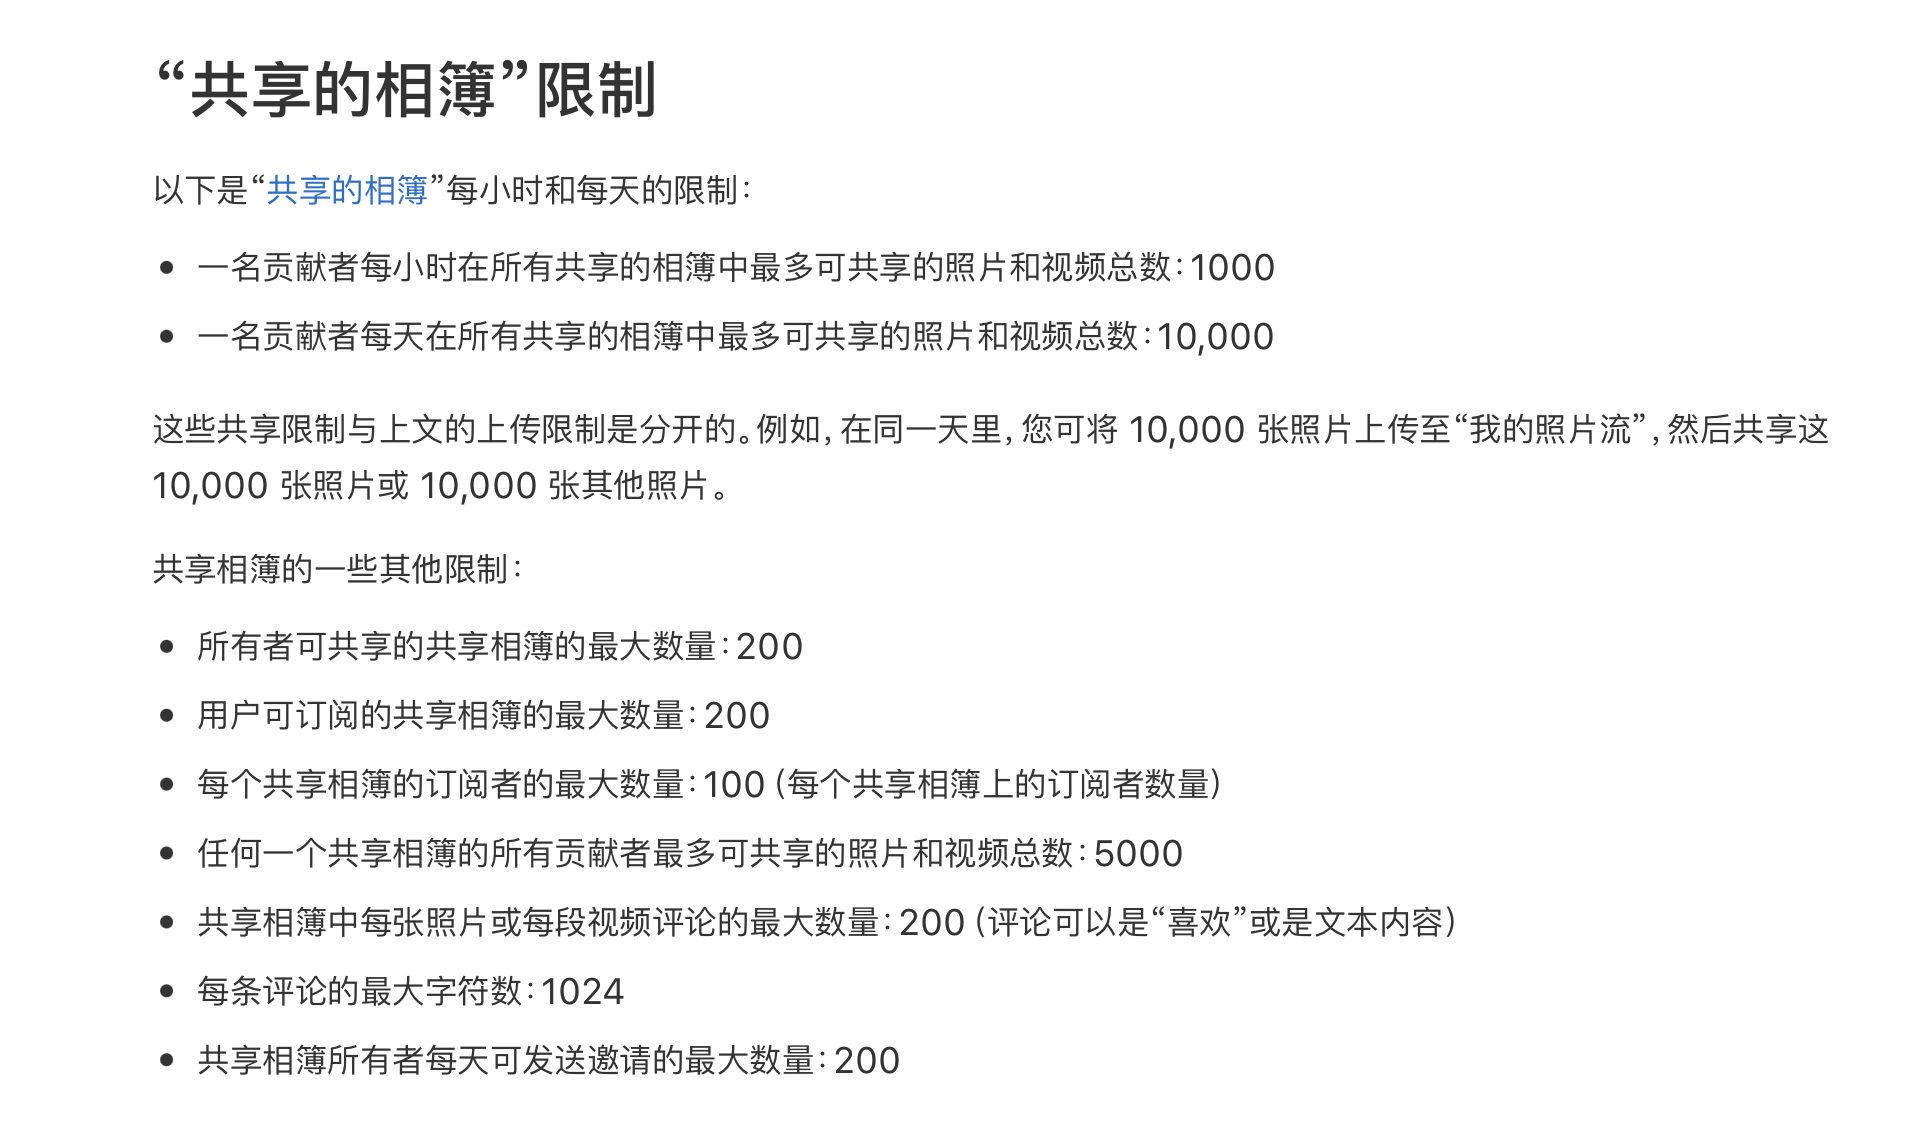 51Talk纽交所上市后首发财报 二季度运营现金流转正 北京时间8月23日晚间